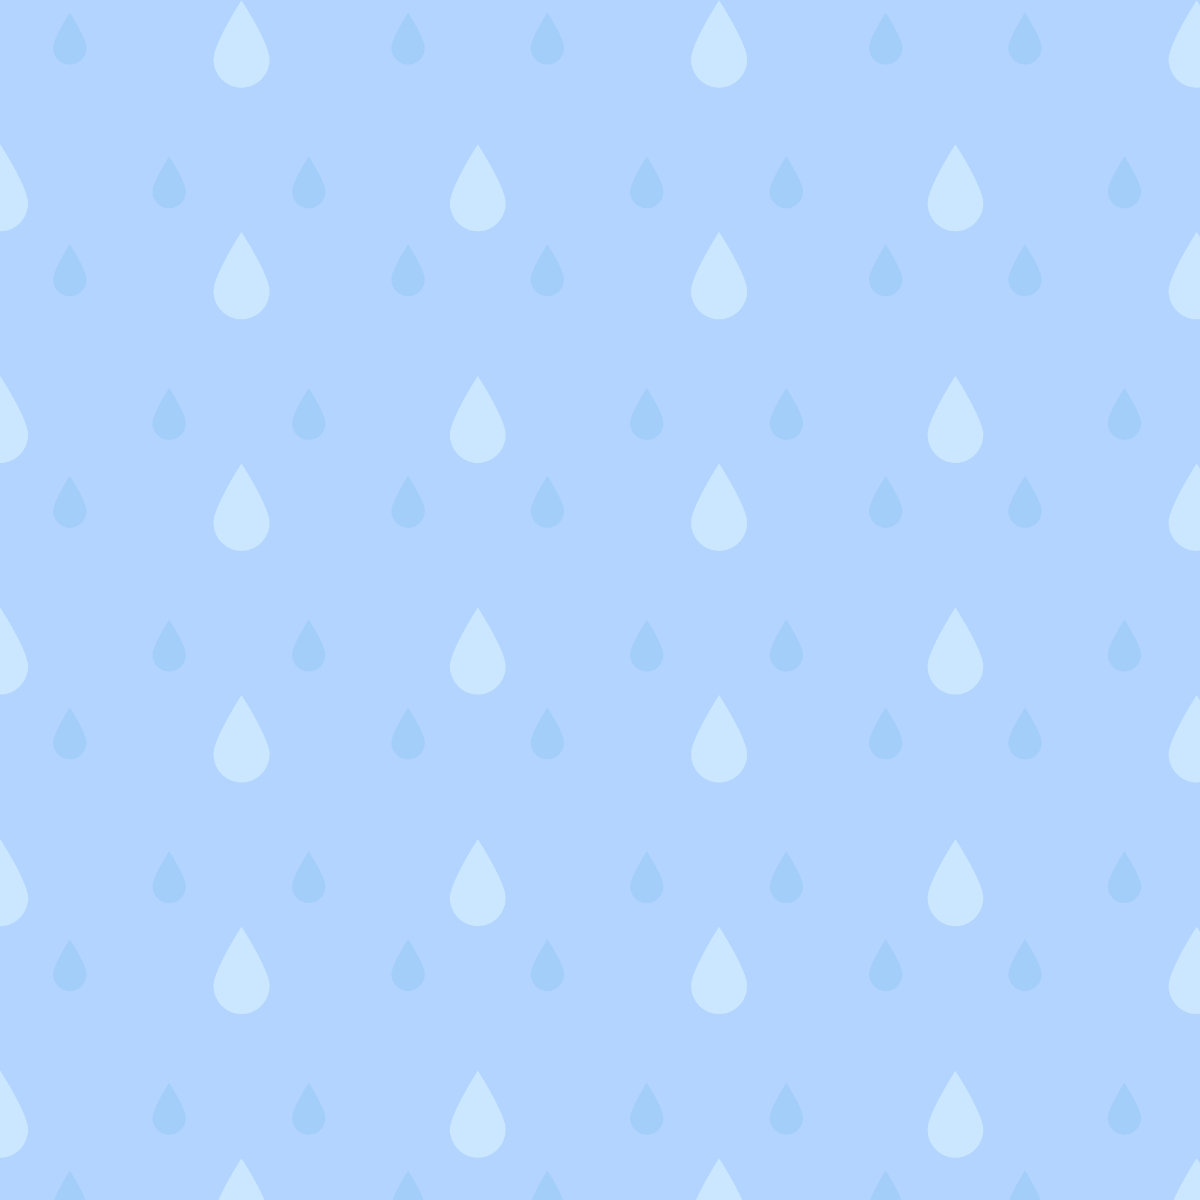 水色の雨模様パターンのイラスト